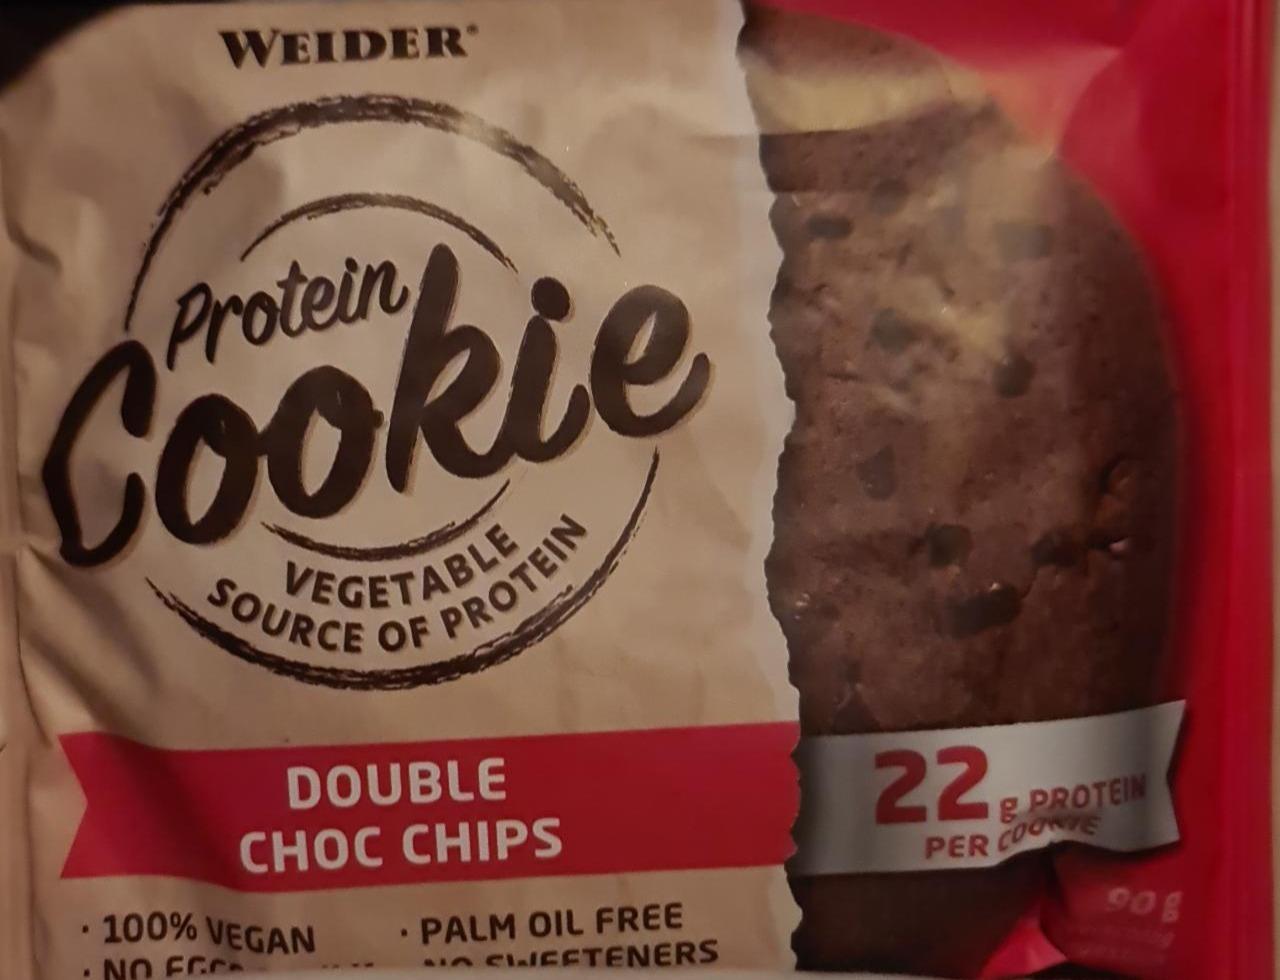 Fotografie - Protein Cookie Double Choc Chips Weider